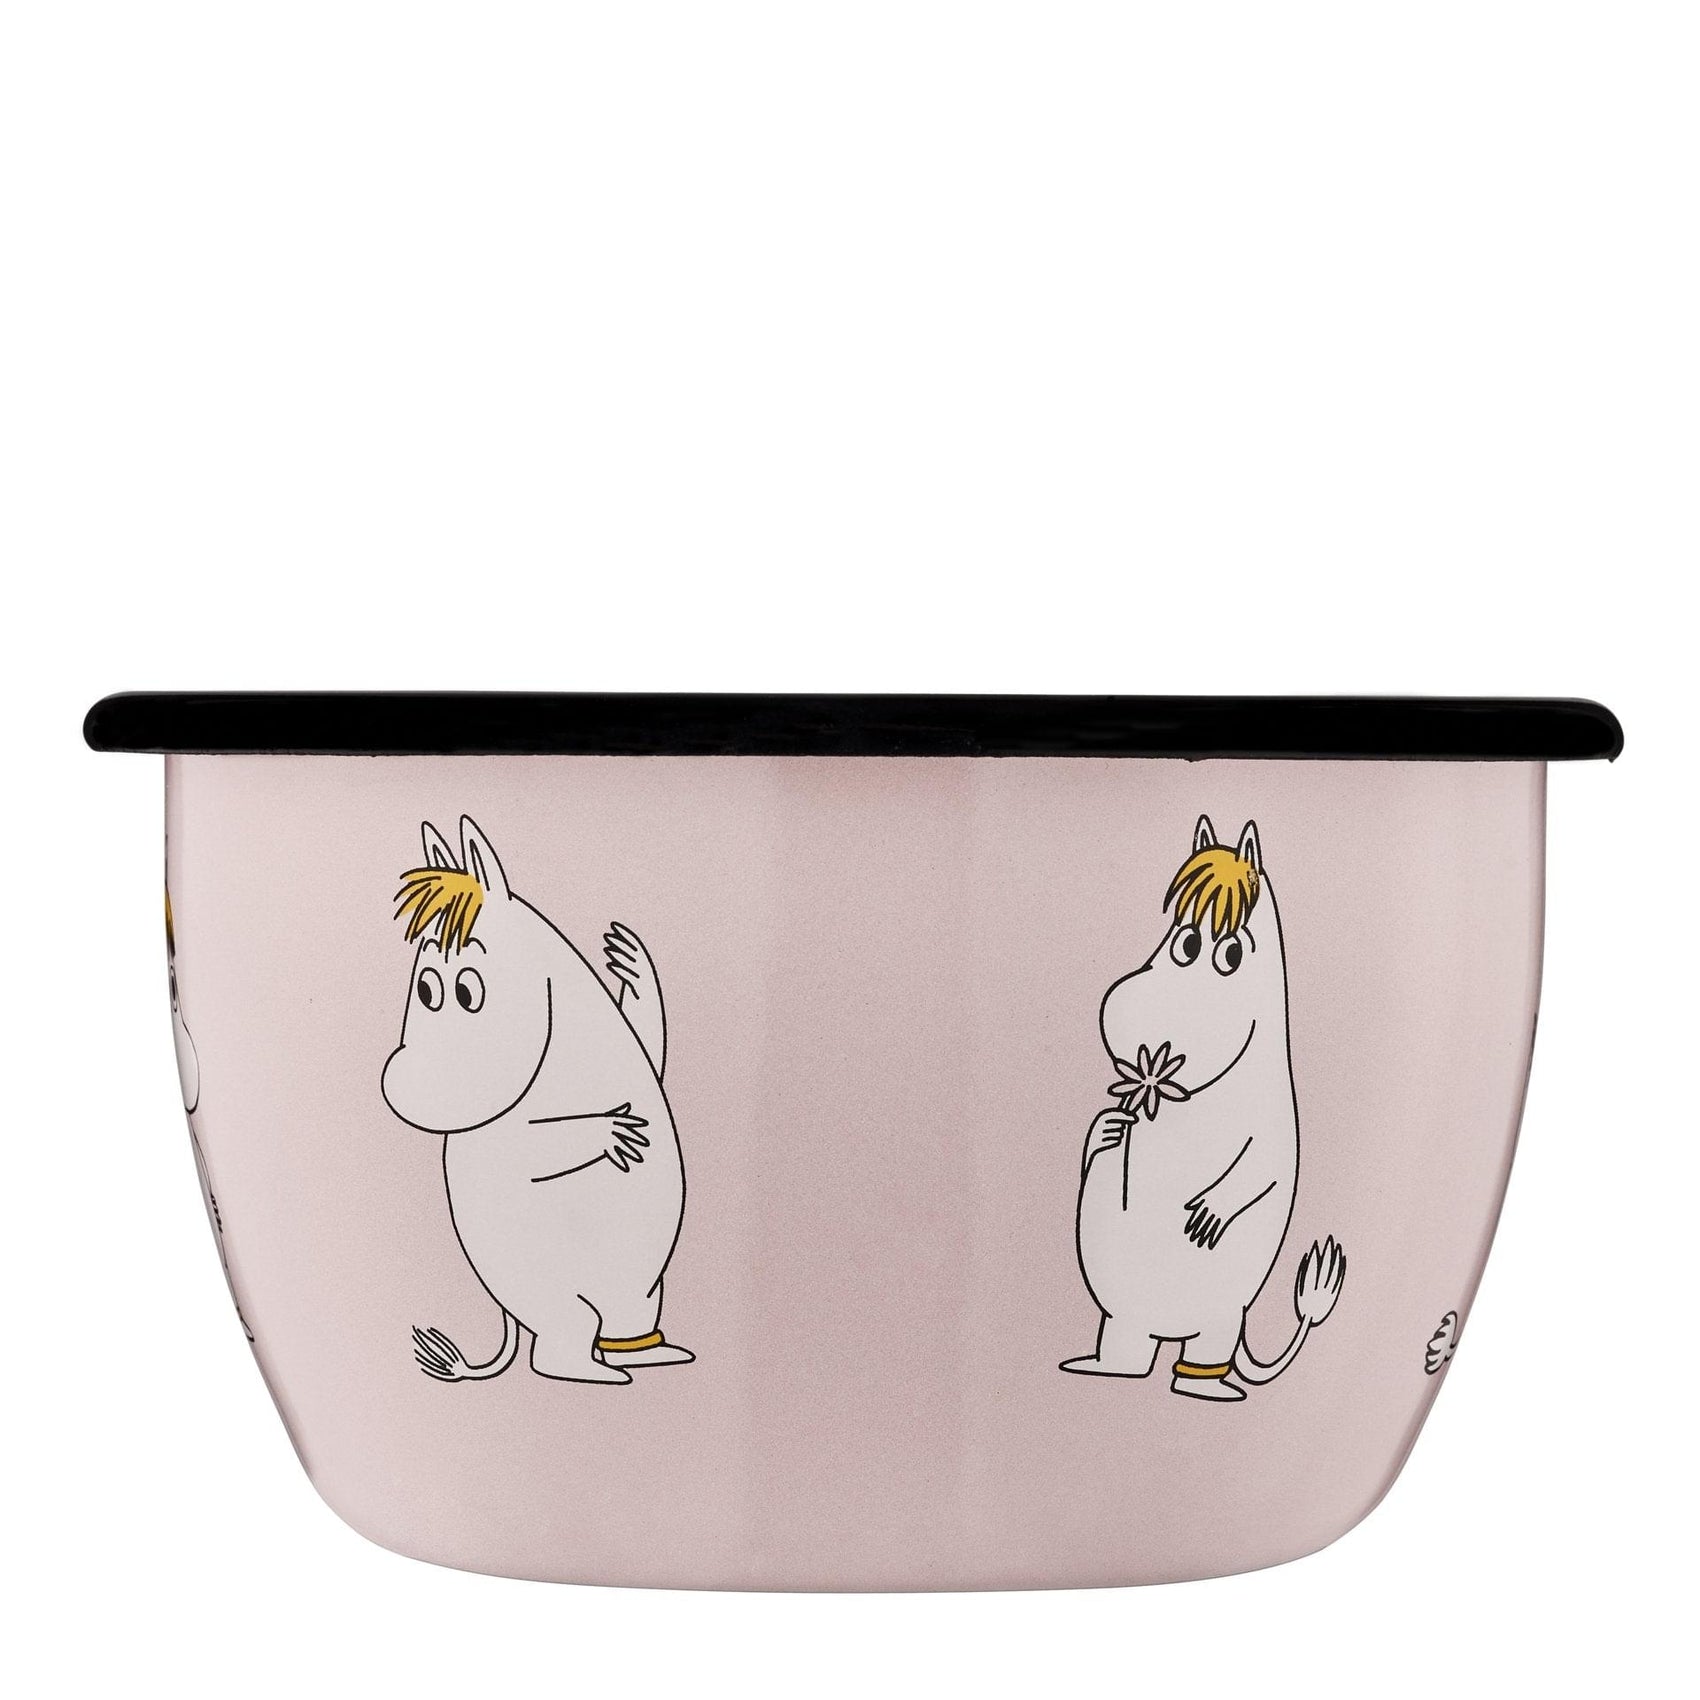 The Moomins enamel bowl 6dl, Snorkfrøken, light pink